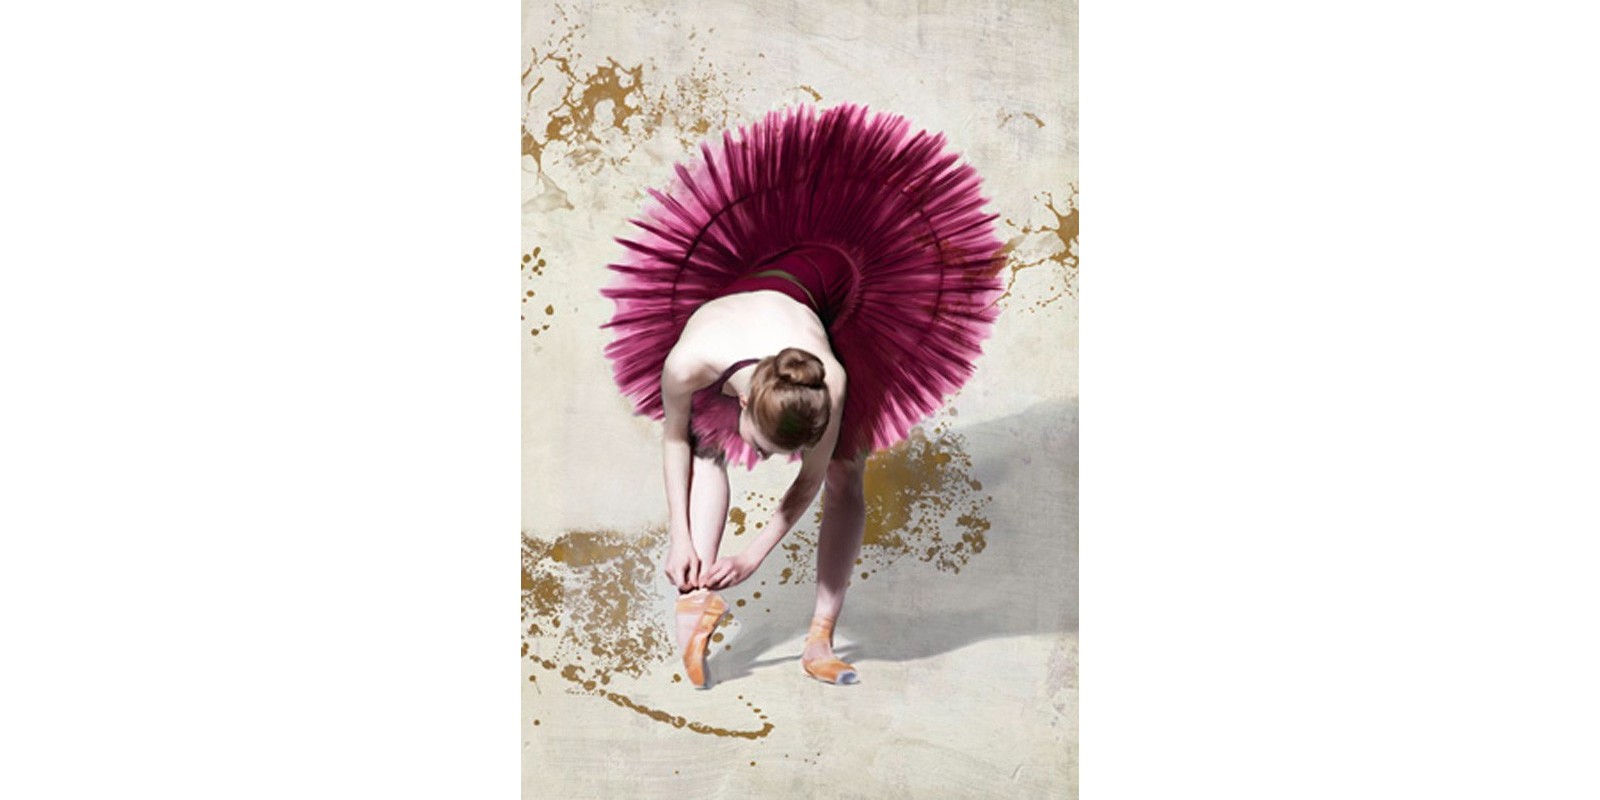 Teo Rizzardi - Purple Ballerina